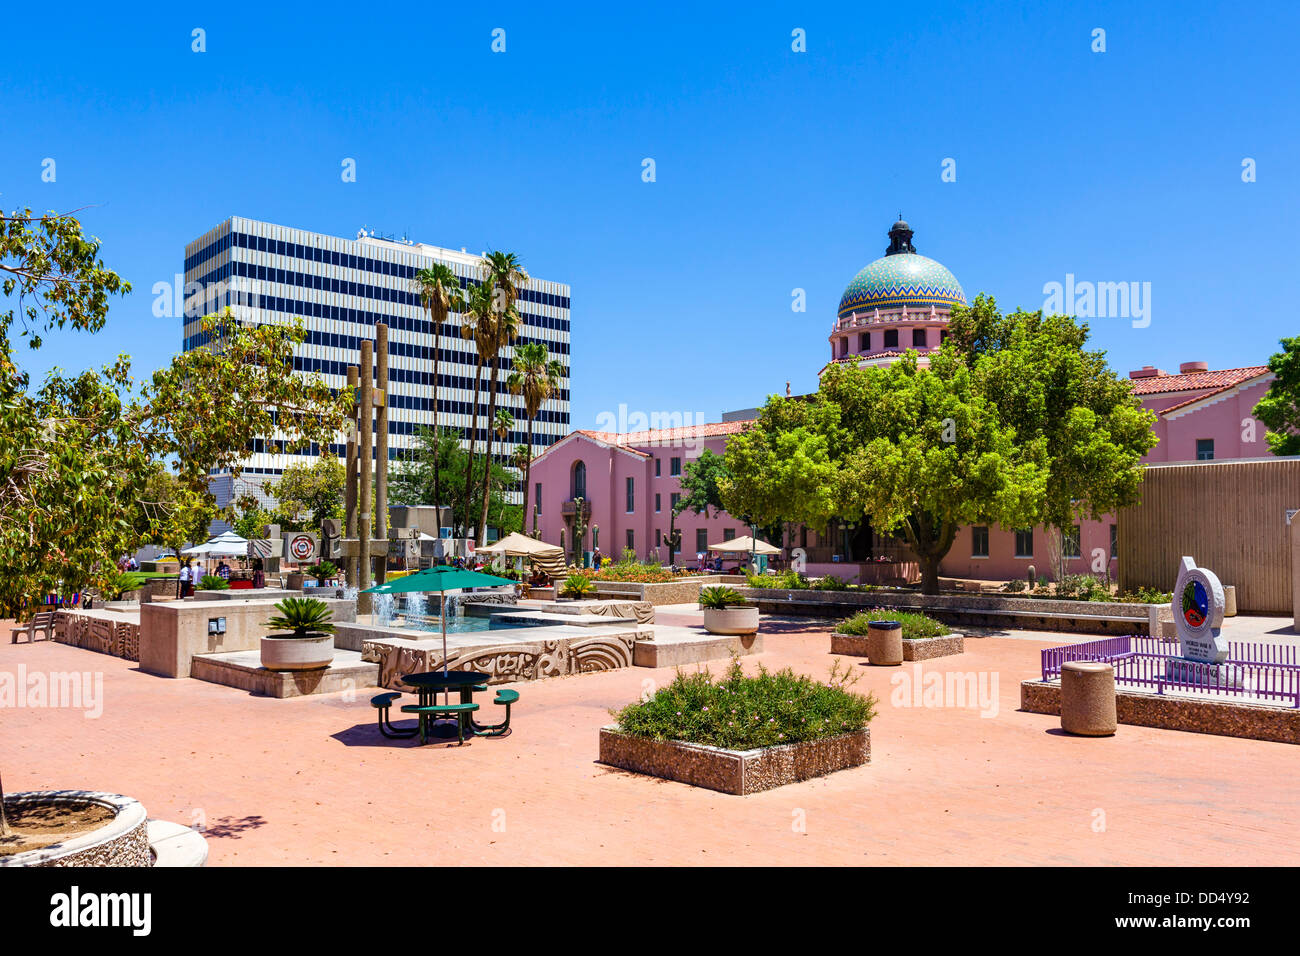 El Presidio Park looking towards Pima County Courthouse in downtown Tucson, Arizona, USA Stock Photo